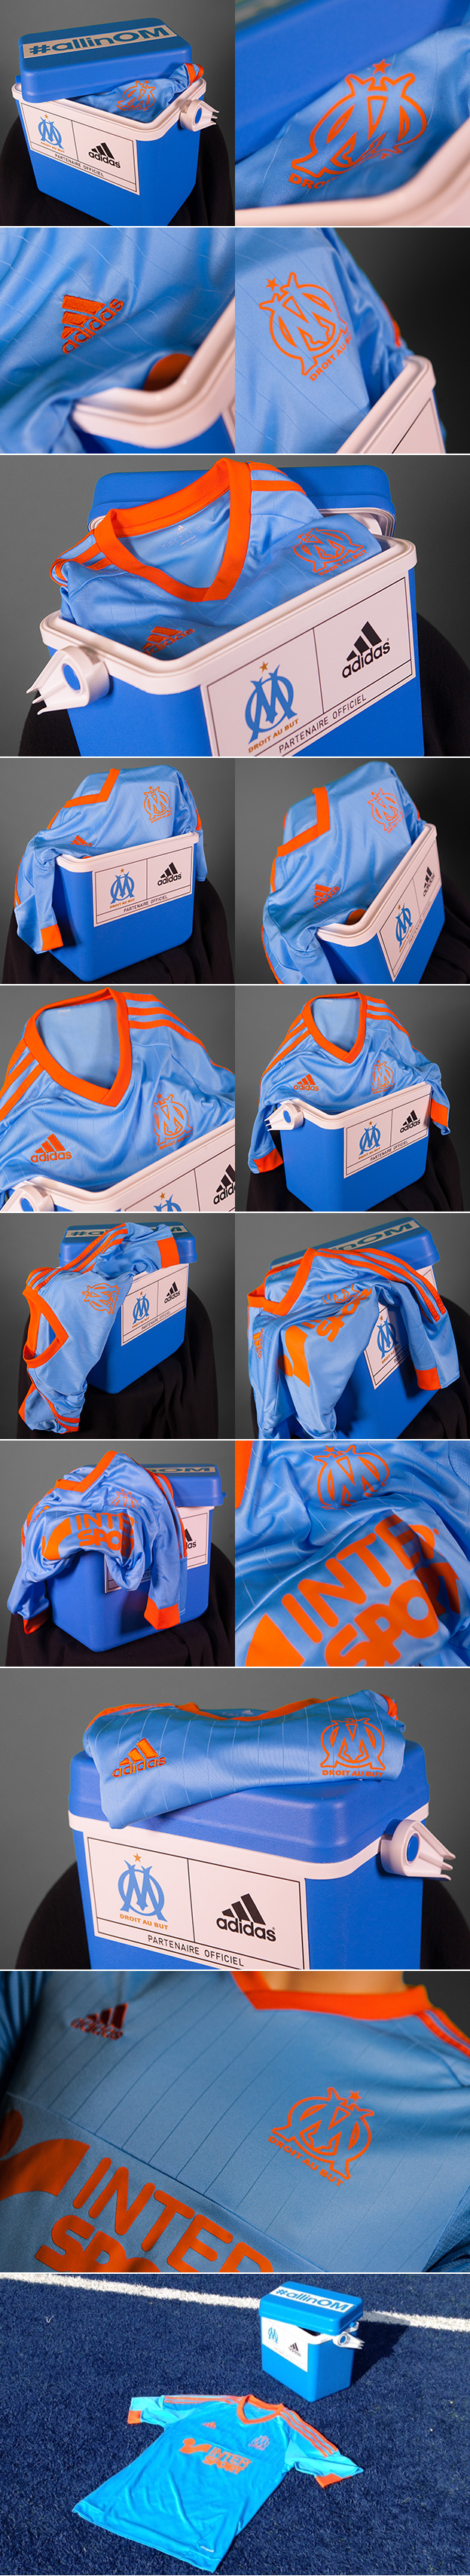 nouveau 4e maillot OM adidas 2015 bleu ciel orange